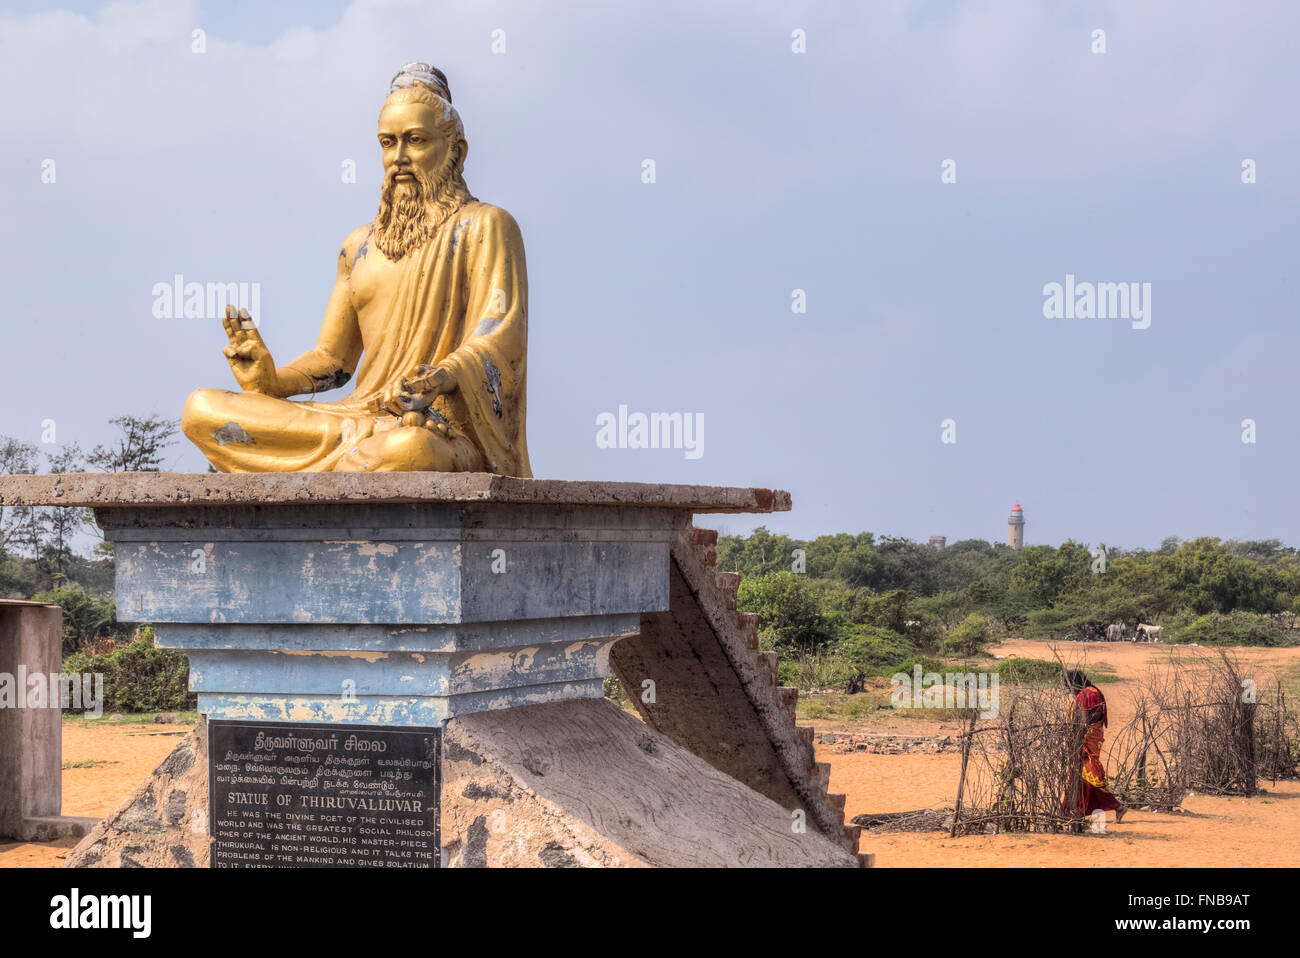 statue of Thiruvalluvar in Mahabalipuram, Tamil Nadu, India Stock Photo